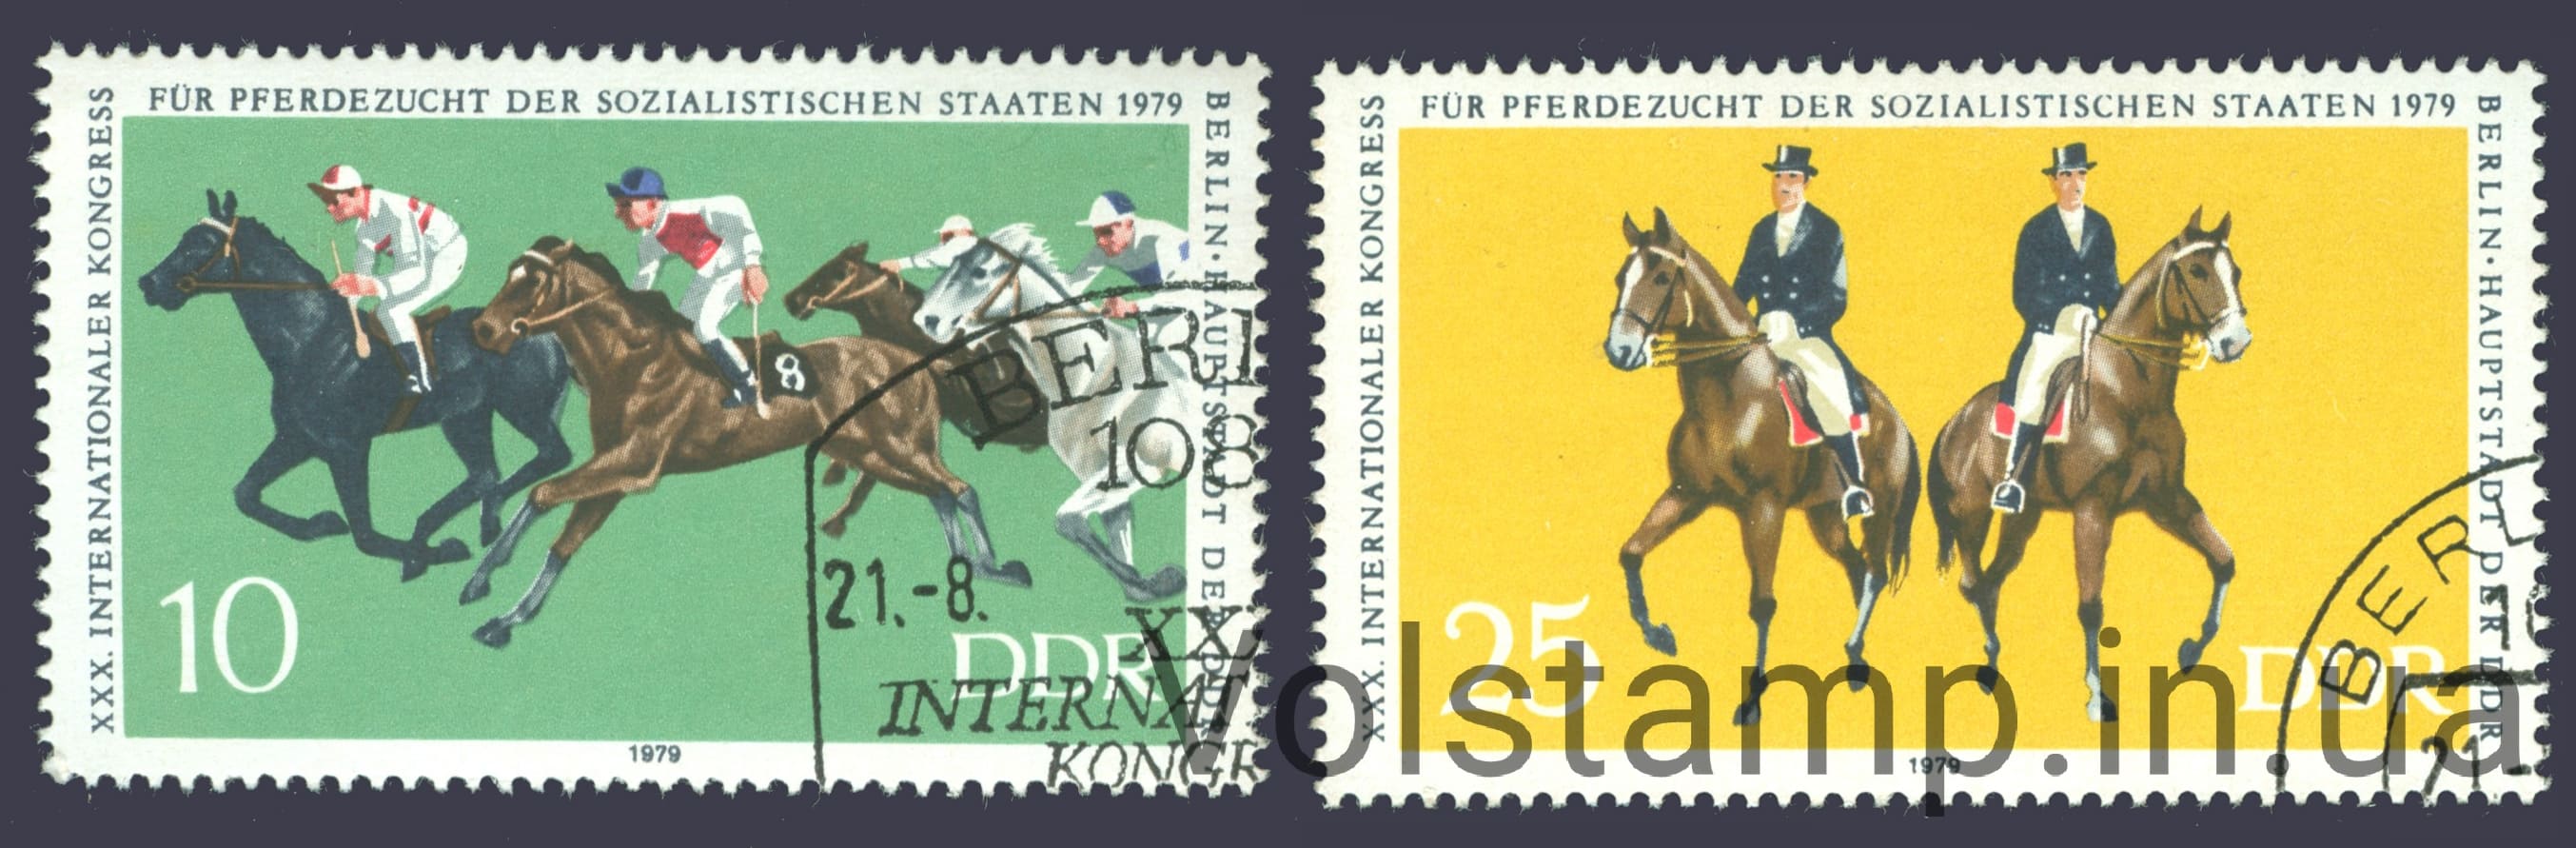 1979 ГДР Серия марок (Международный конгресс для конского разведения социалистических государств, Берлин) Гашеные №2449-2450